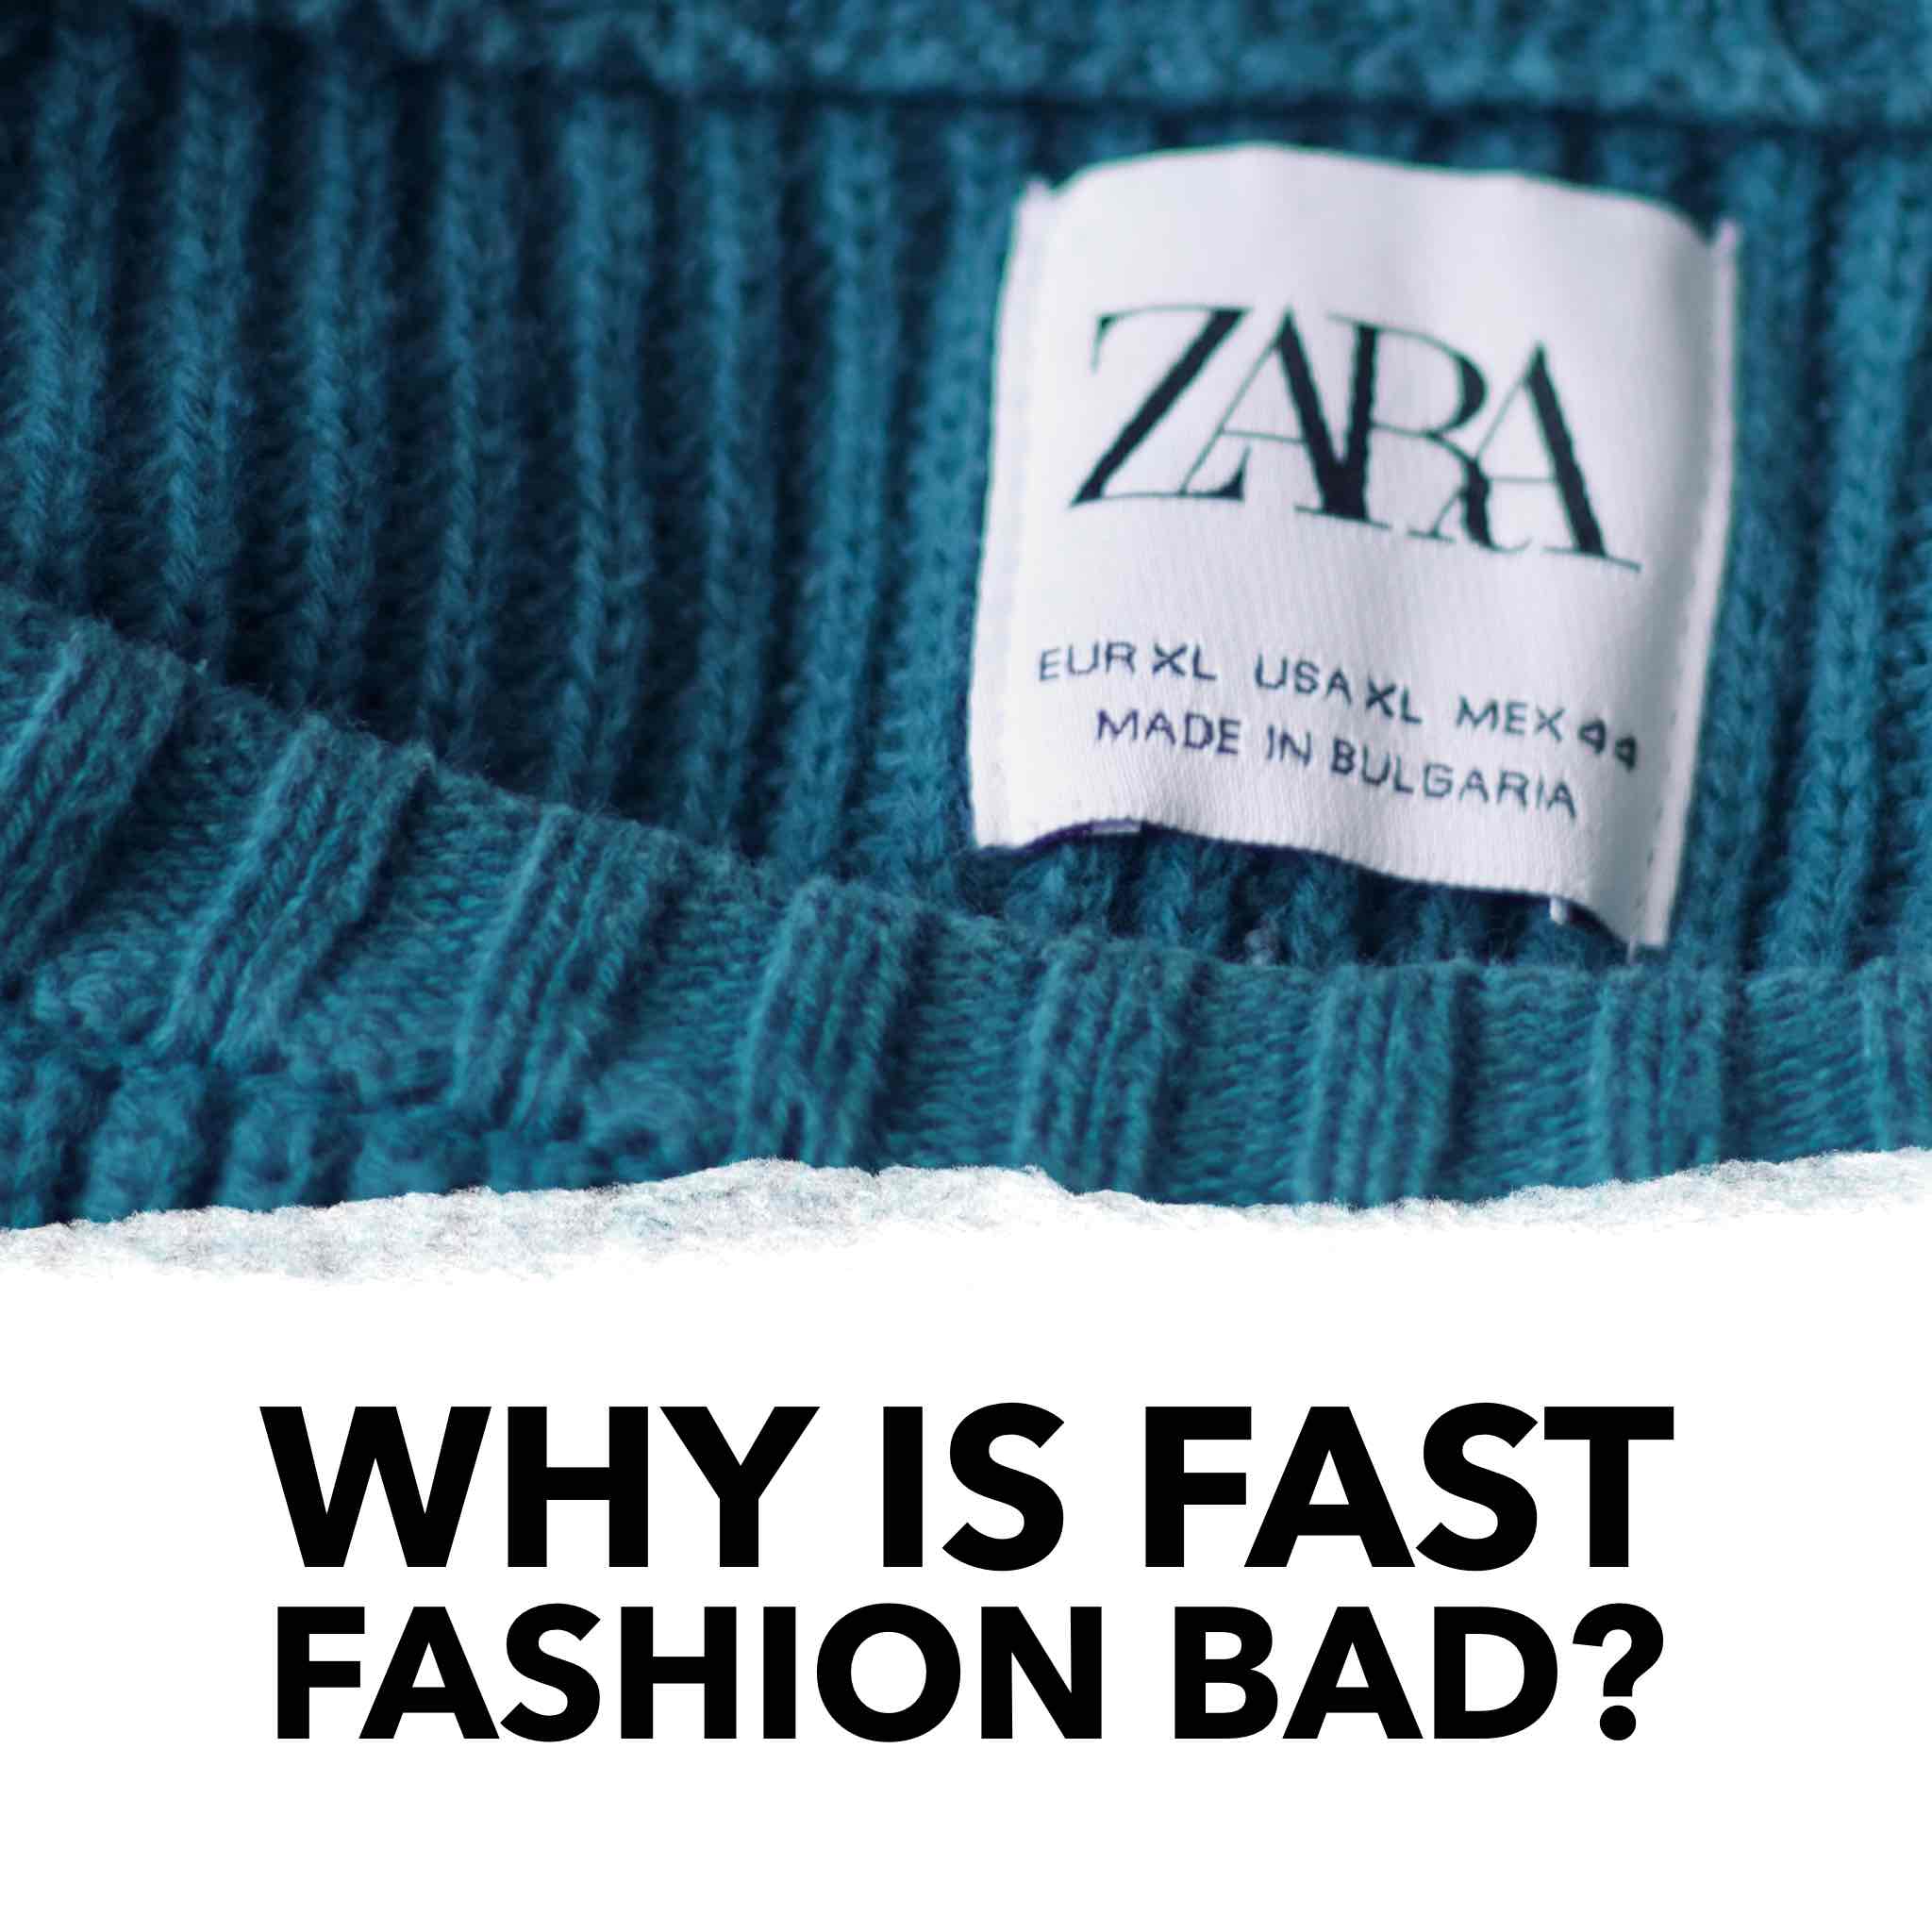 Why is fast fashion bad zara